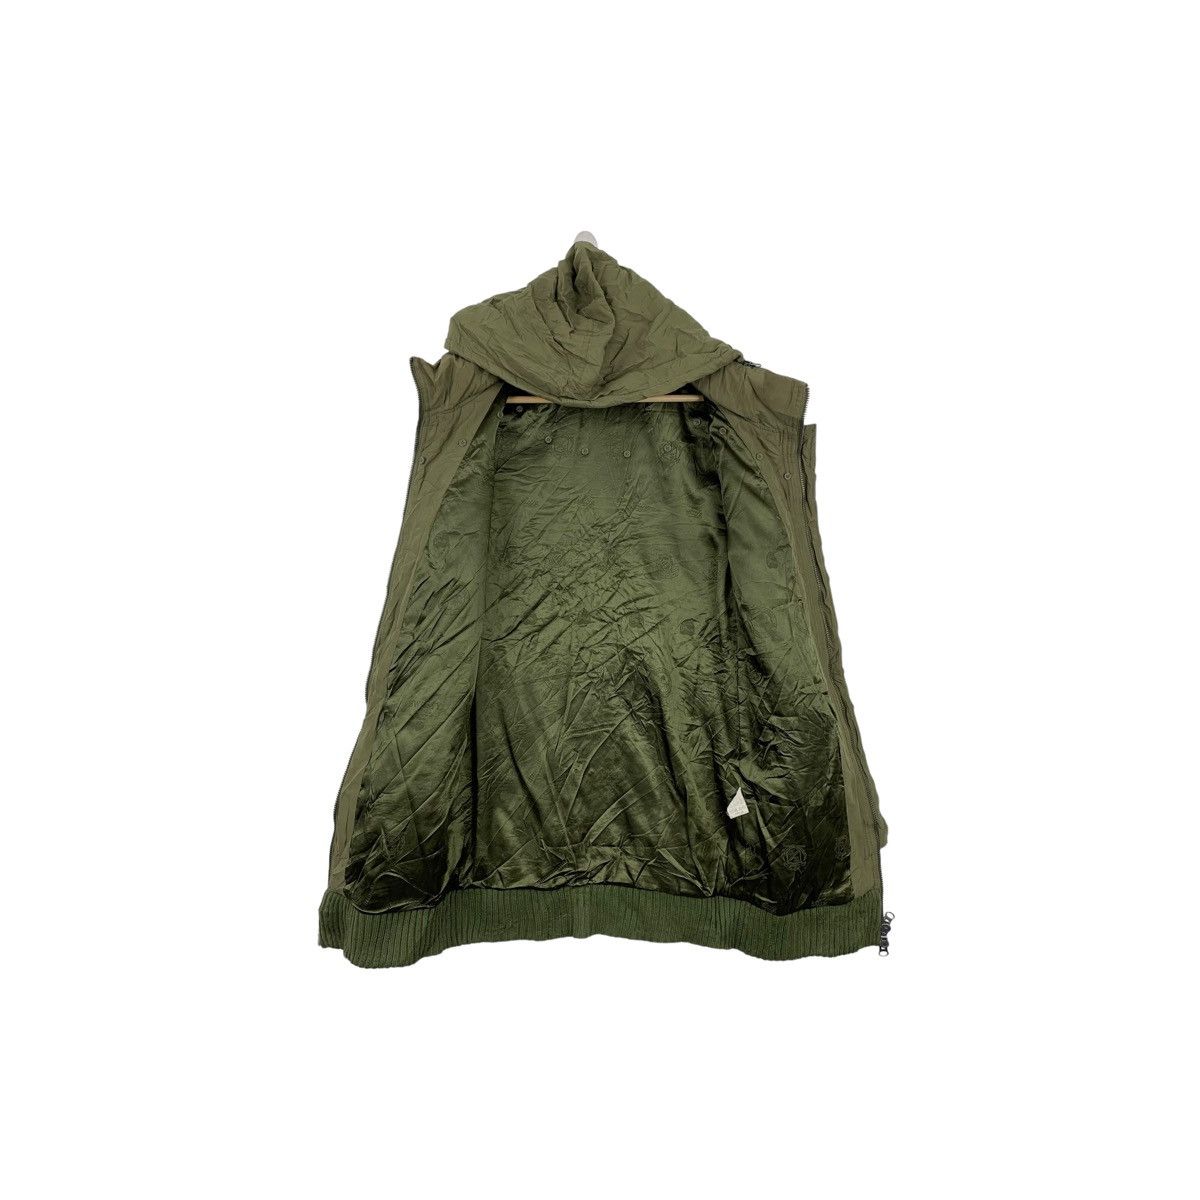 Designer Rare !! MAISON GILFY Long jacket jacket Size US S / EU 44-46 / 1 - 6 Thumbnail